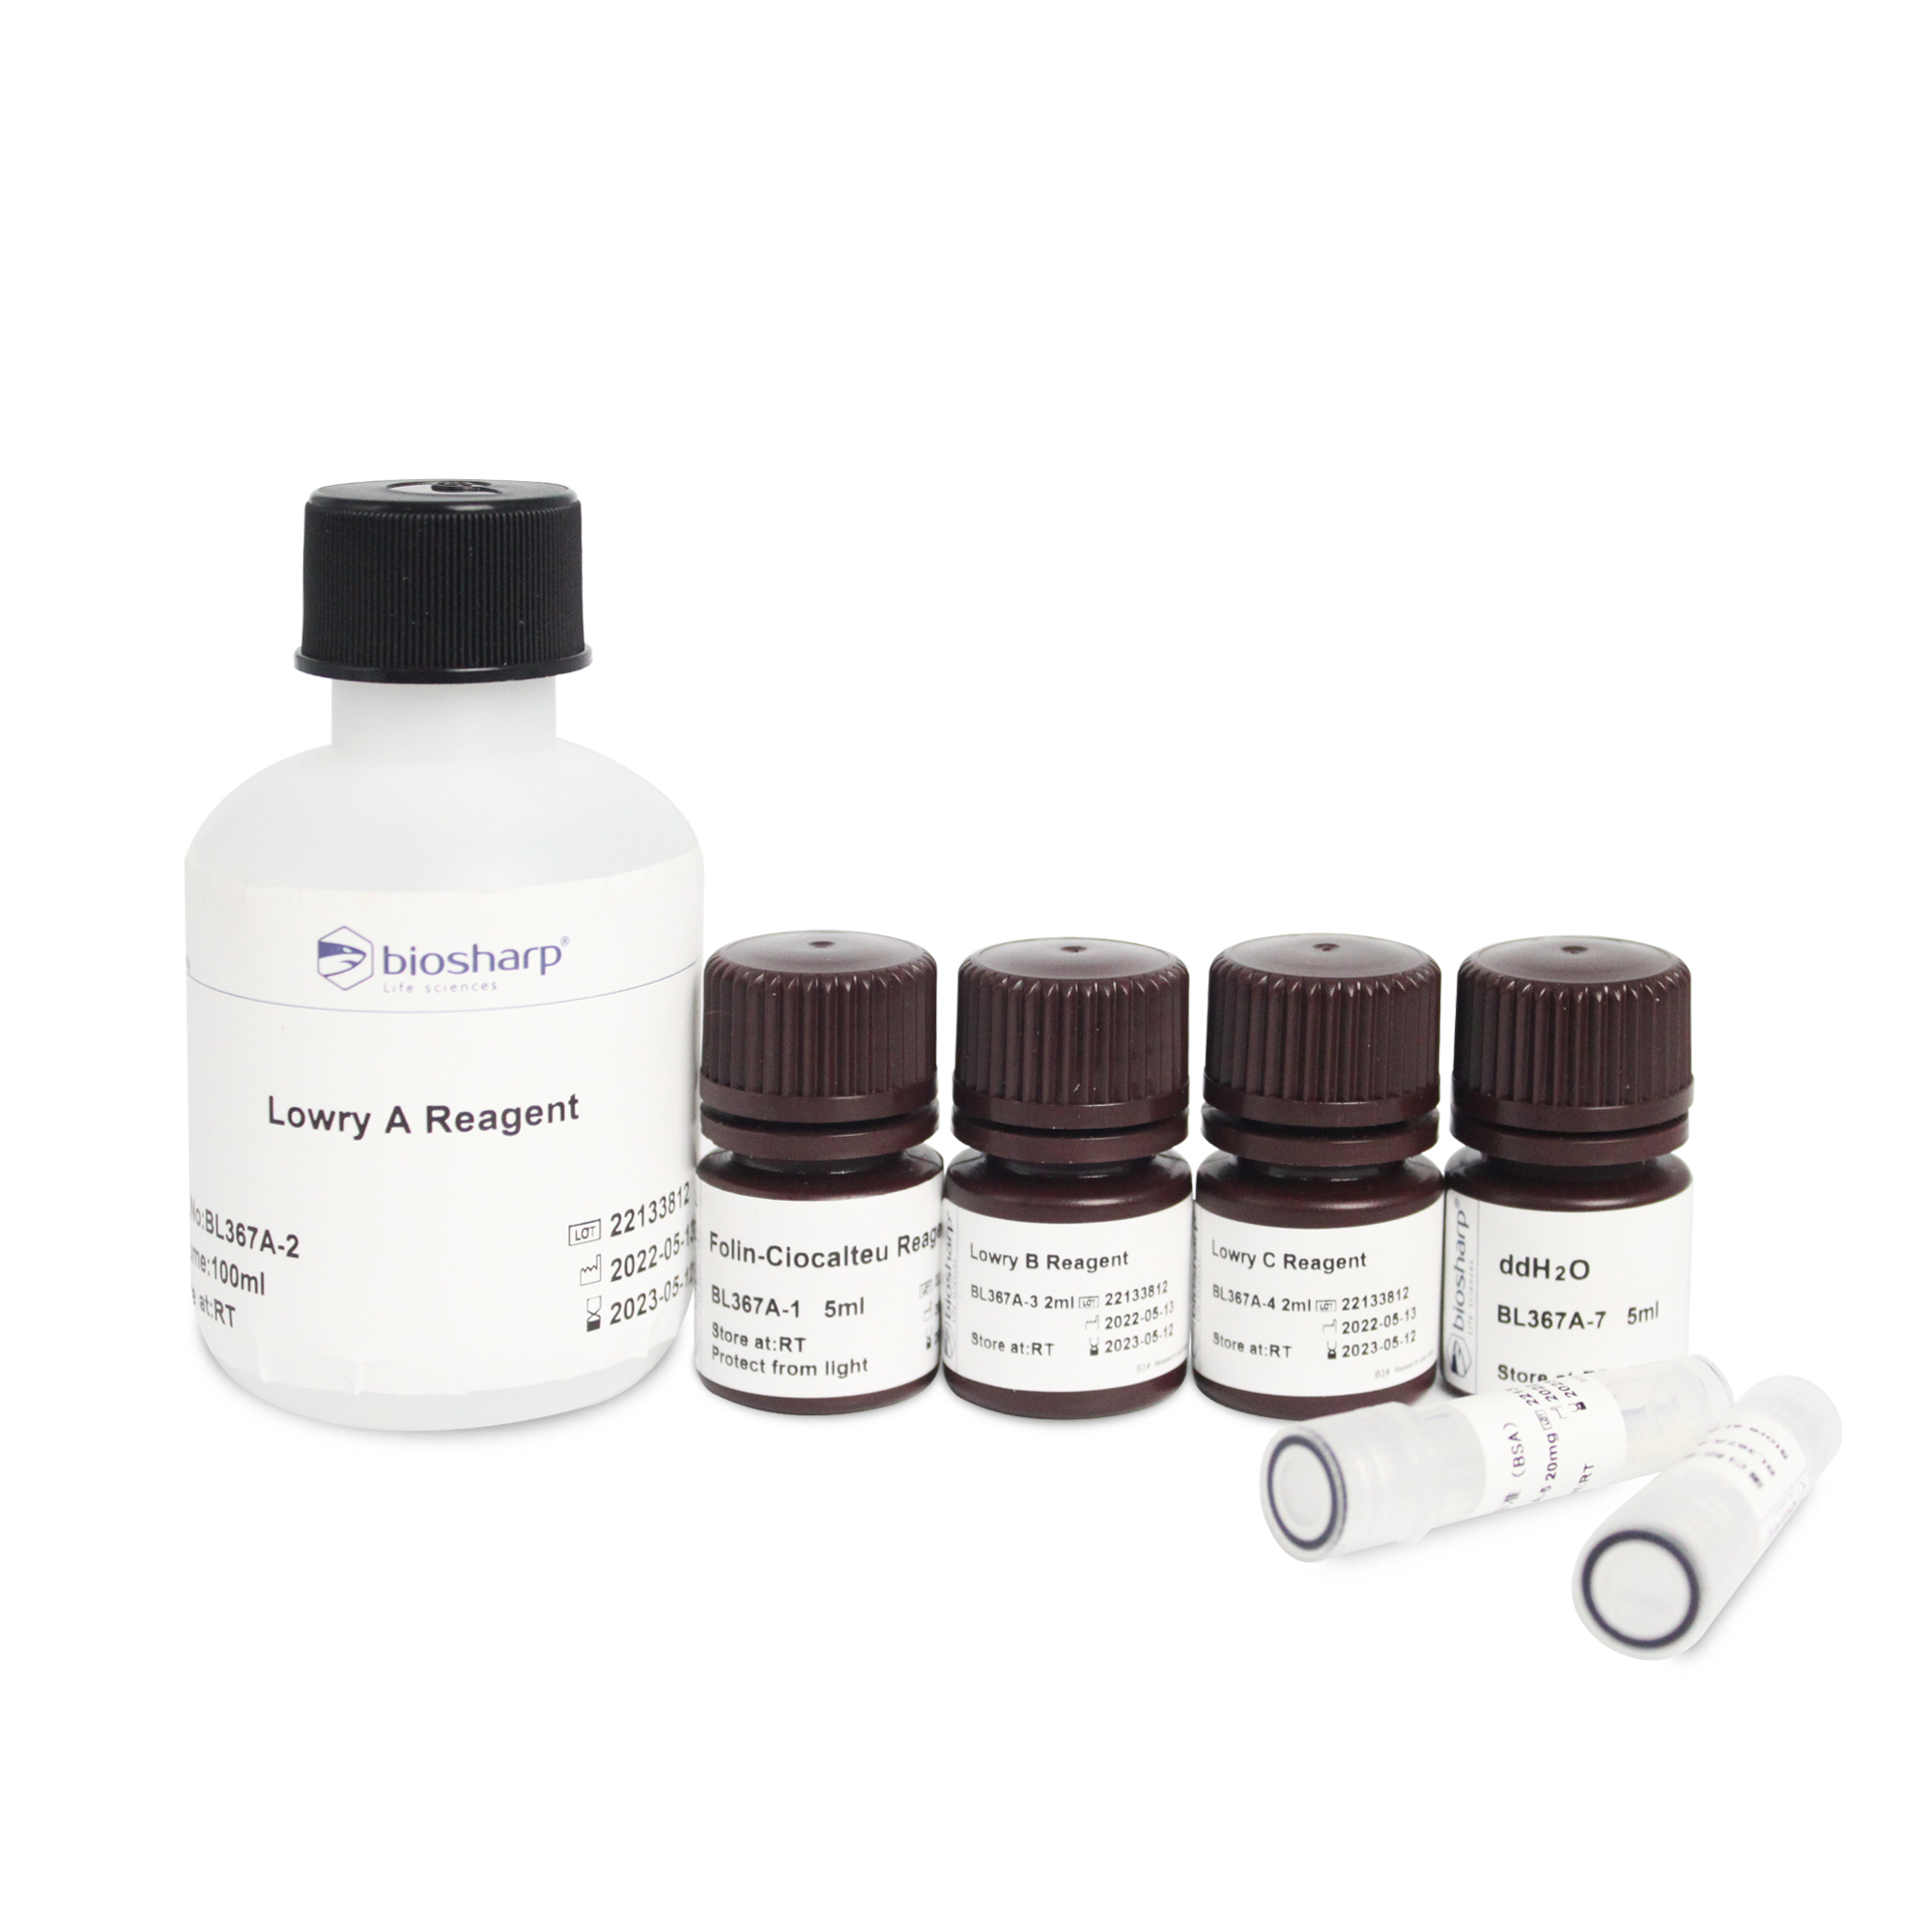 改良Lowry法蛋白定量试剂盒